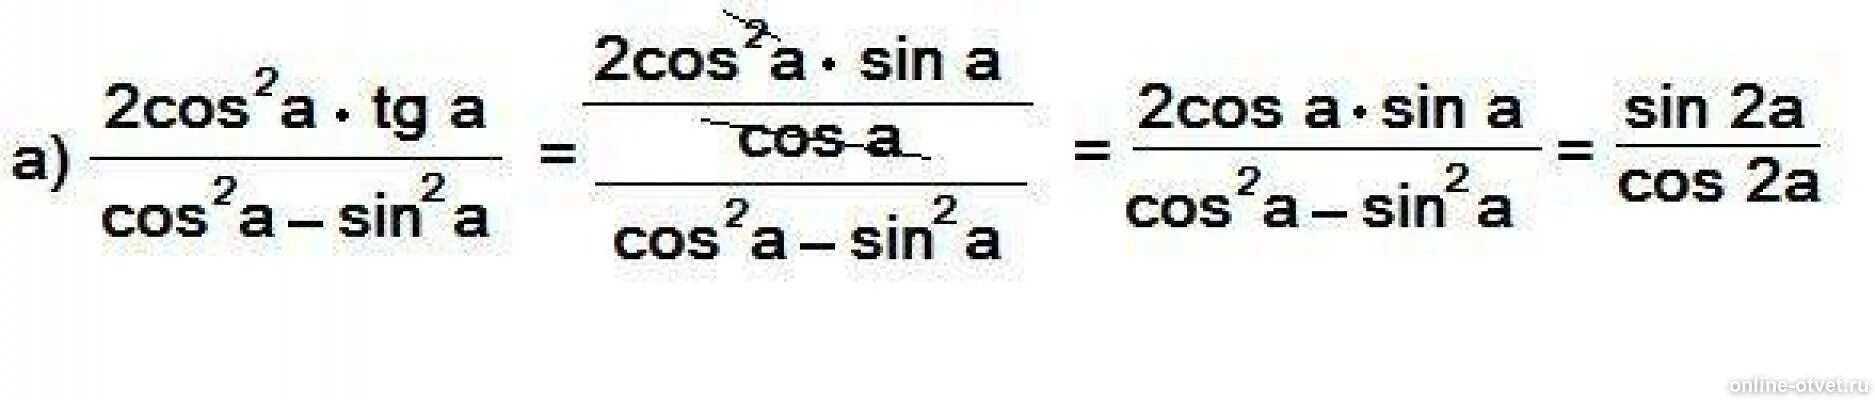 Cos a b cos a b упростить выражение. Упростить выражение sin b/cos b - sin b. Cos2a. 1-Cos2a формула.